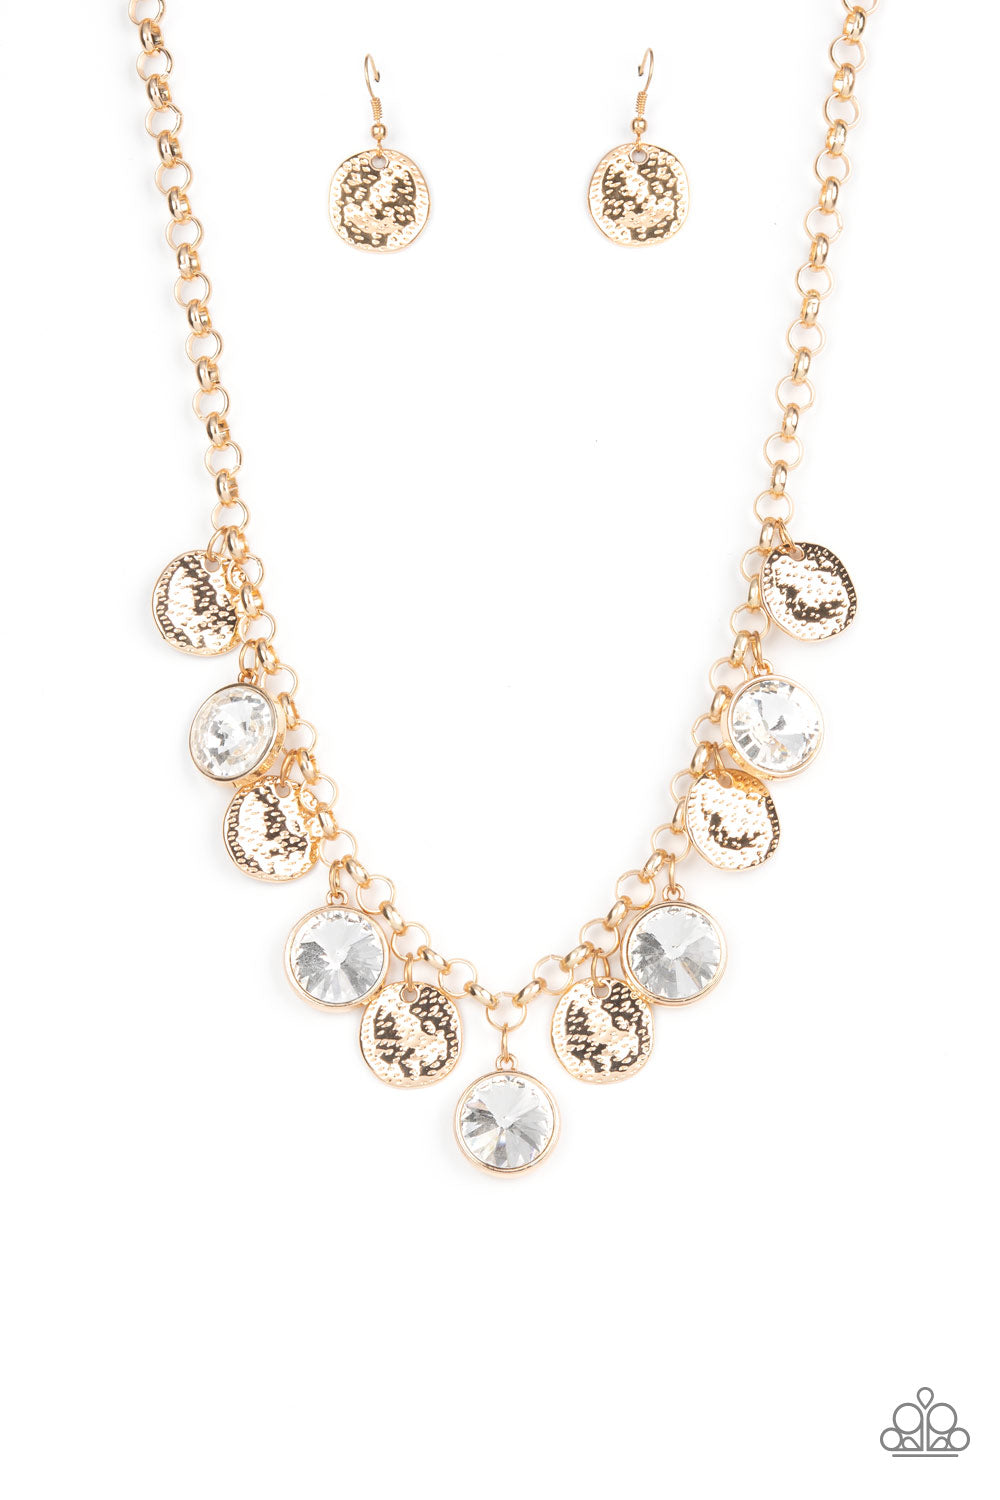 Spot On Sparkle - Gold necklace 1979